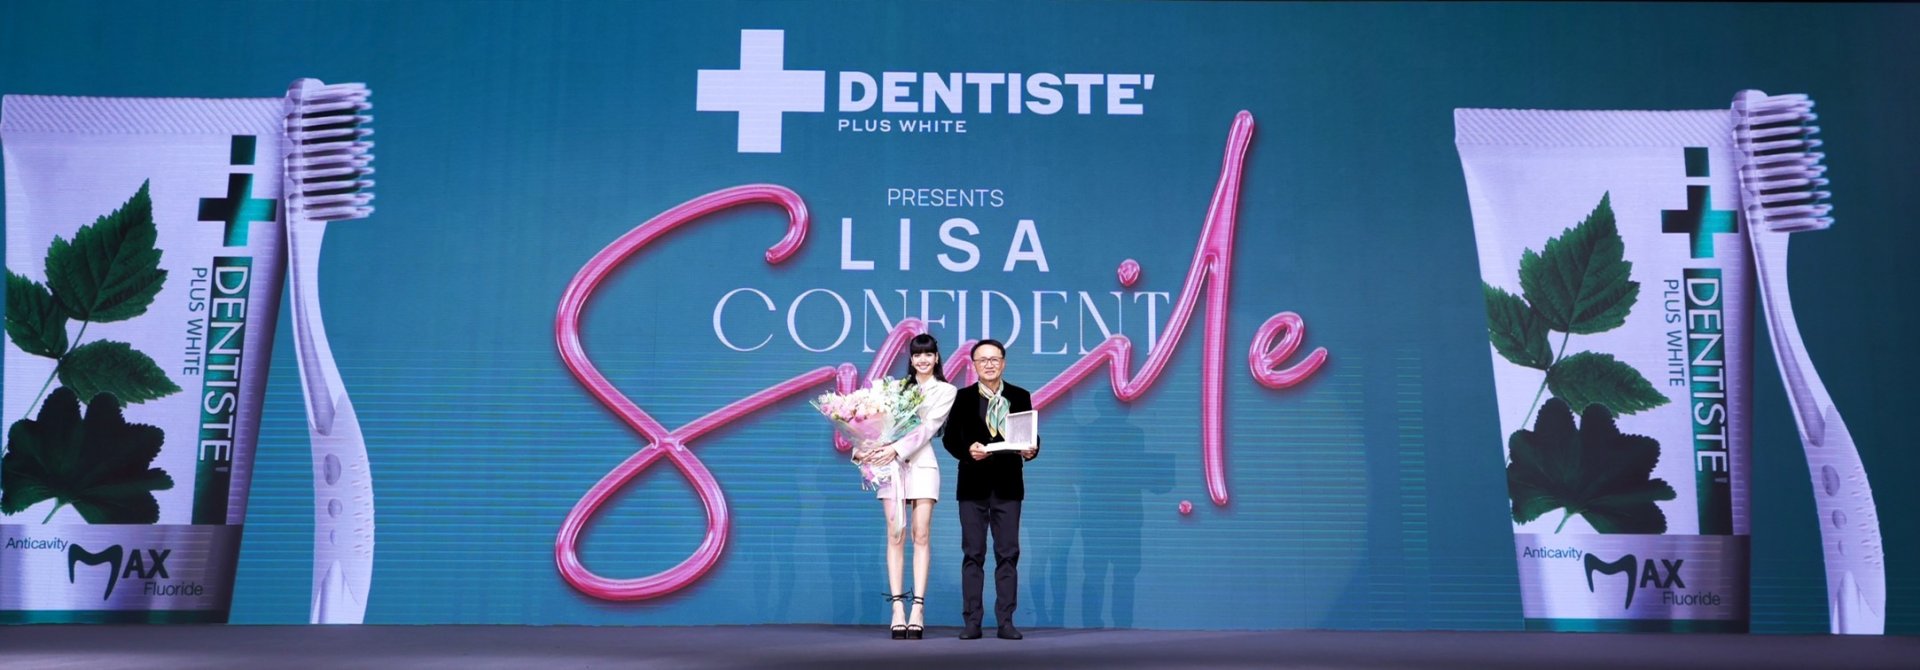 บลิ๊งค์ฟิน! ลิซ่าแจกยิ้มรัวๆ สร้างปรากฏการณ์ยิ้มสวย ฟันขาวมั่นใจกับยาสีฟันพรีเมียม เดนทิสเต้ ในงาน 'LISA' Special Greet: "DENTISTE' Presents Confident Smile with LISA"